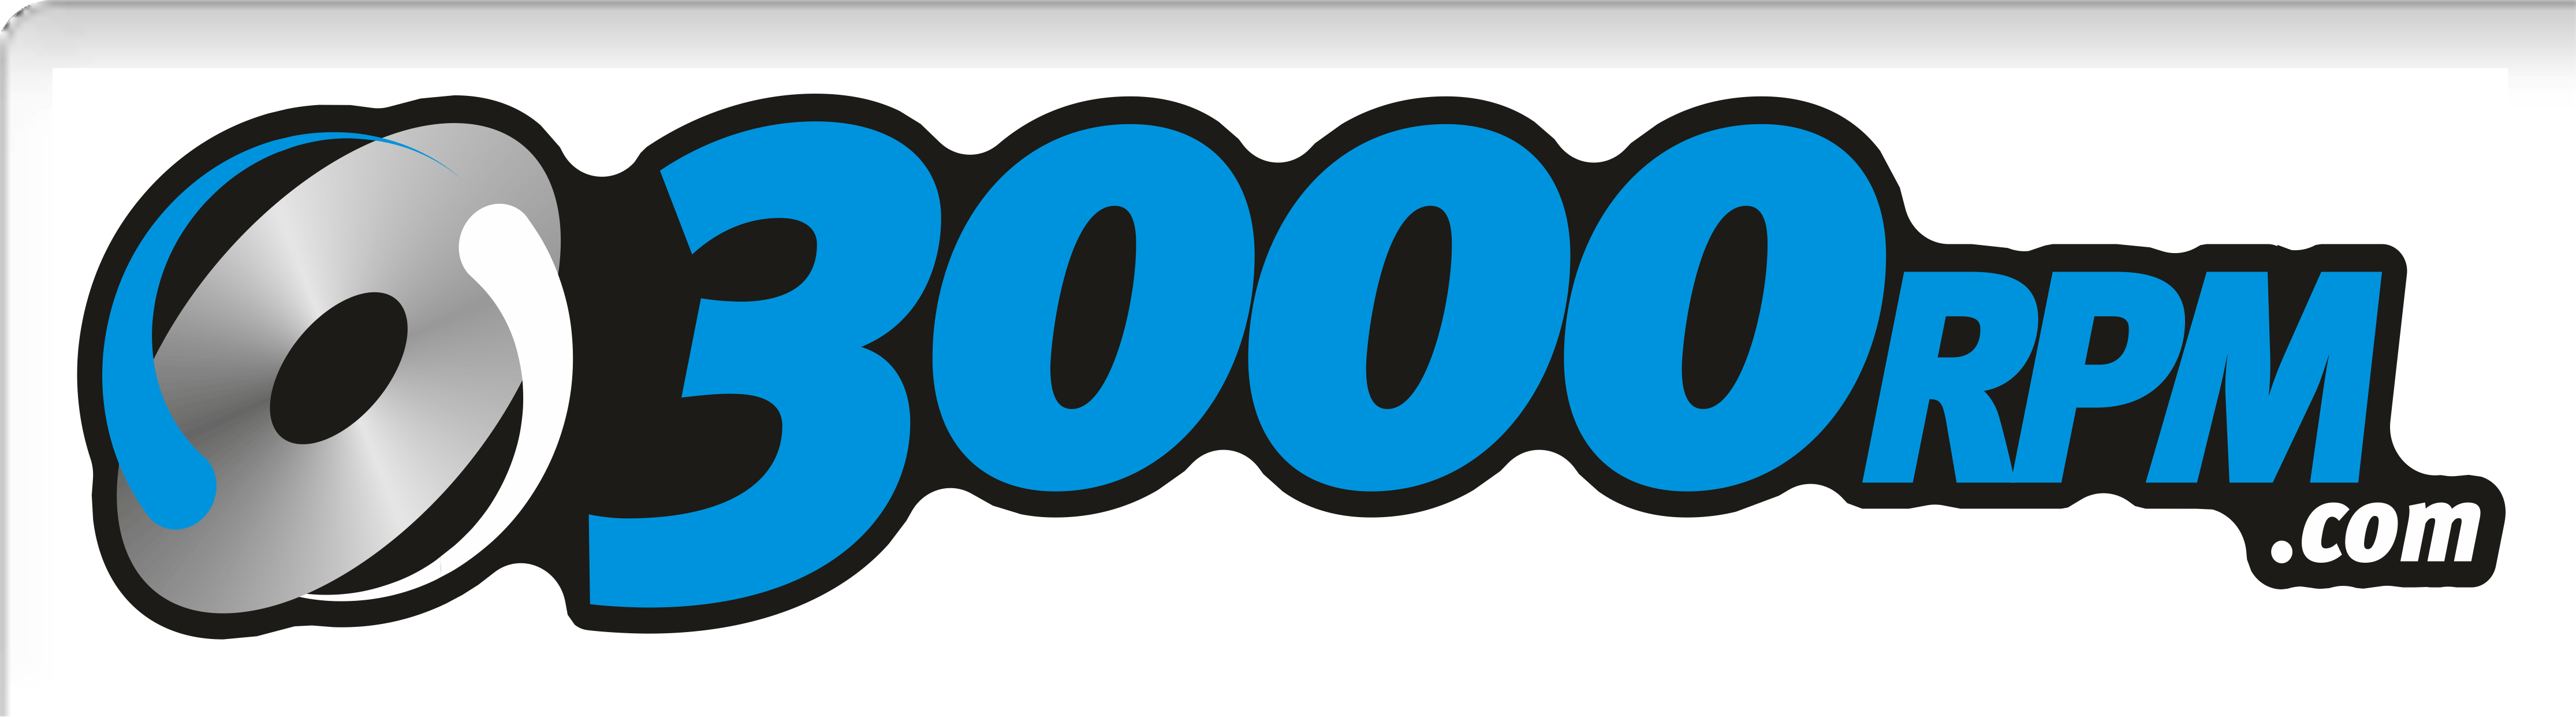 3000RPM.com